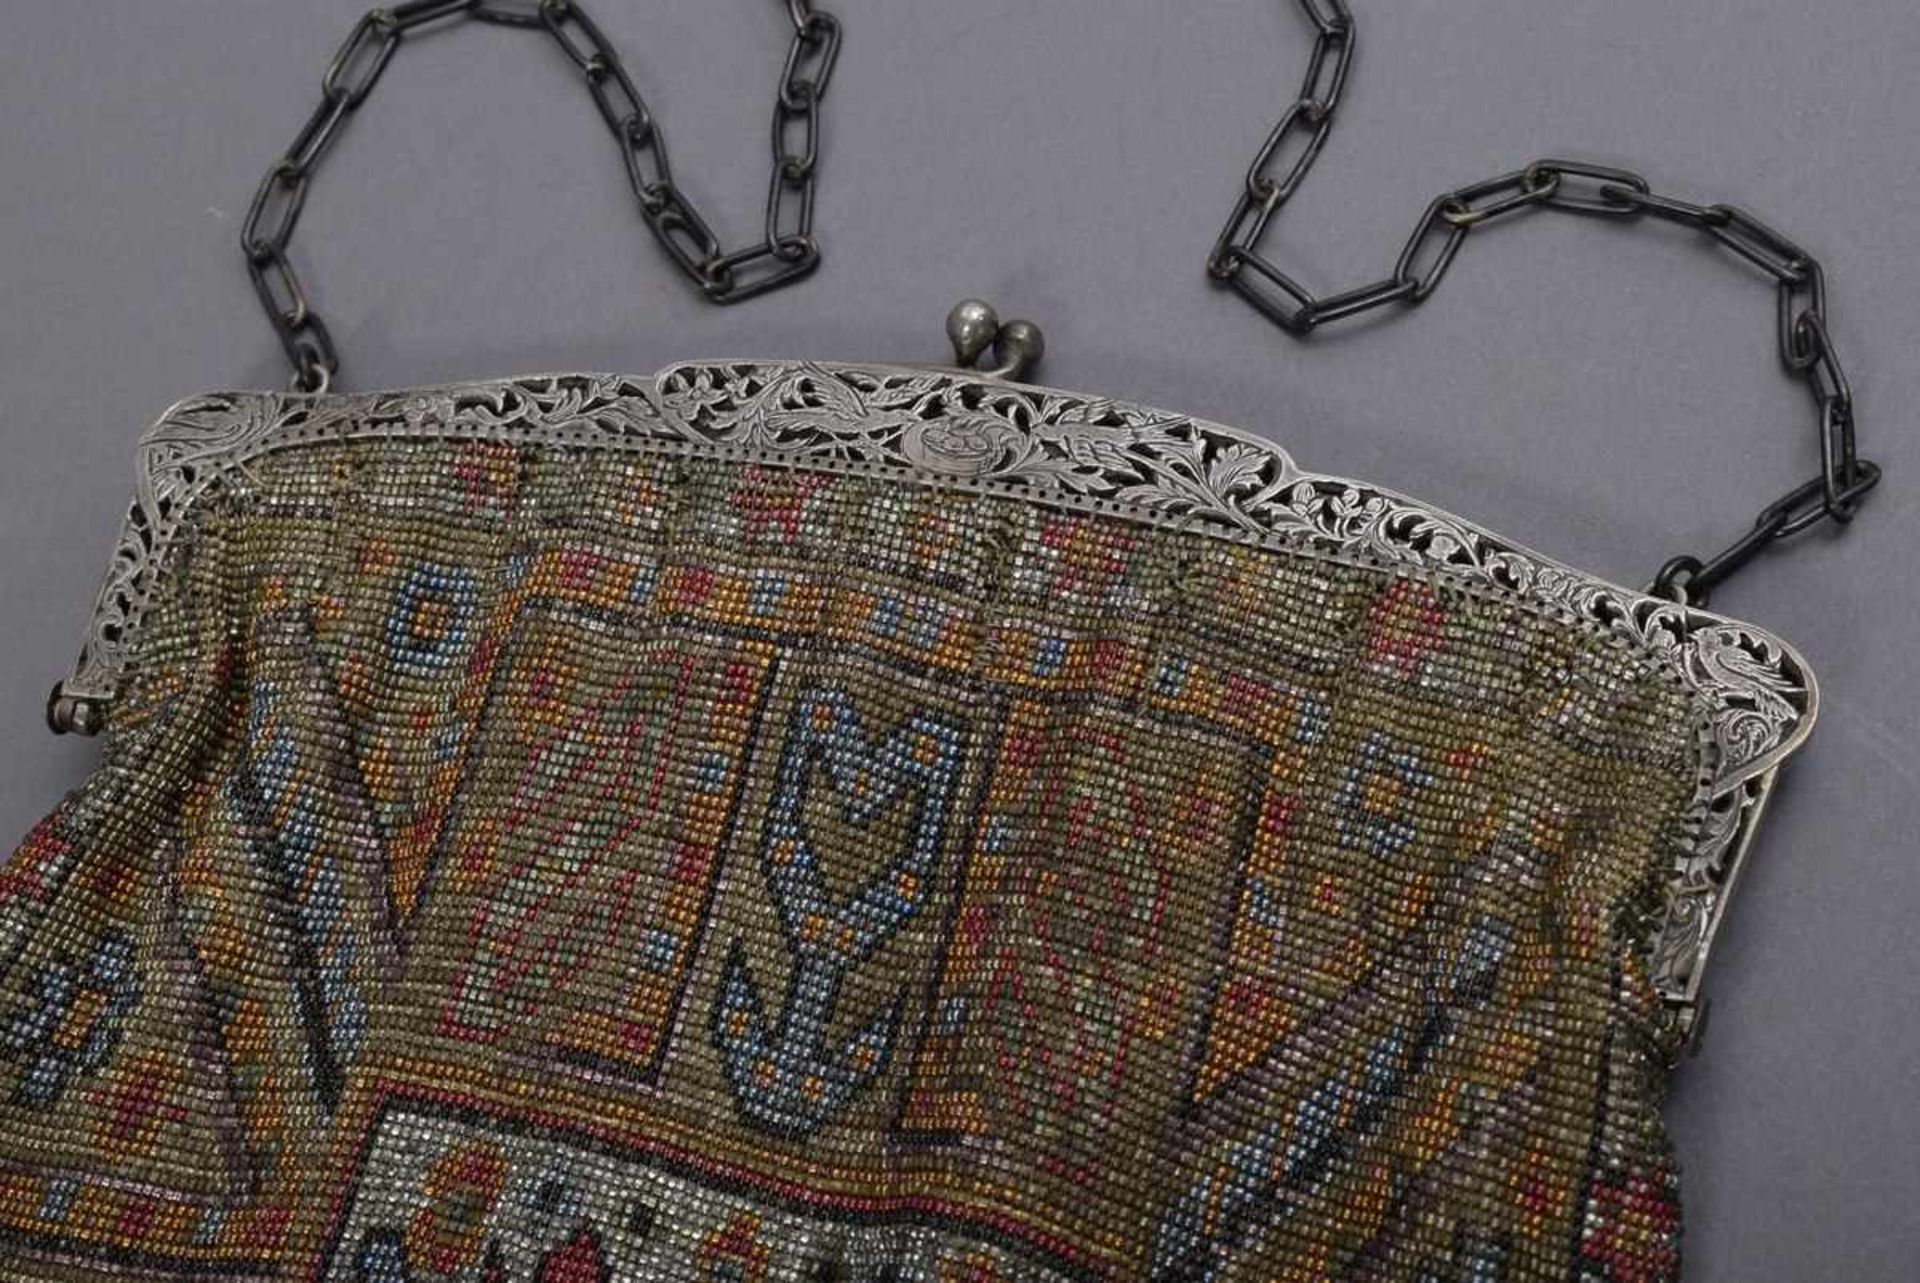 Art Deco Perlstickerei Tasche mit ornamentalem Dekor und floral durchbrochenem Silber 800 Bügel, - Bild 2 aus 4